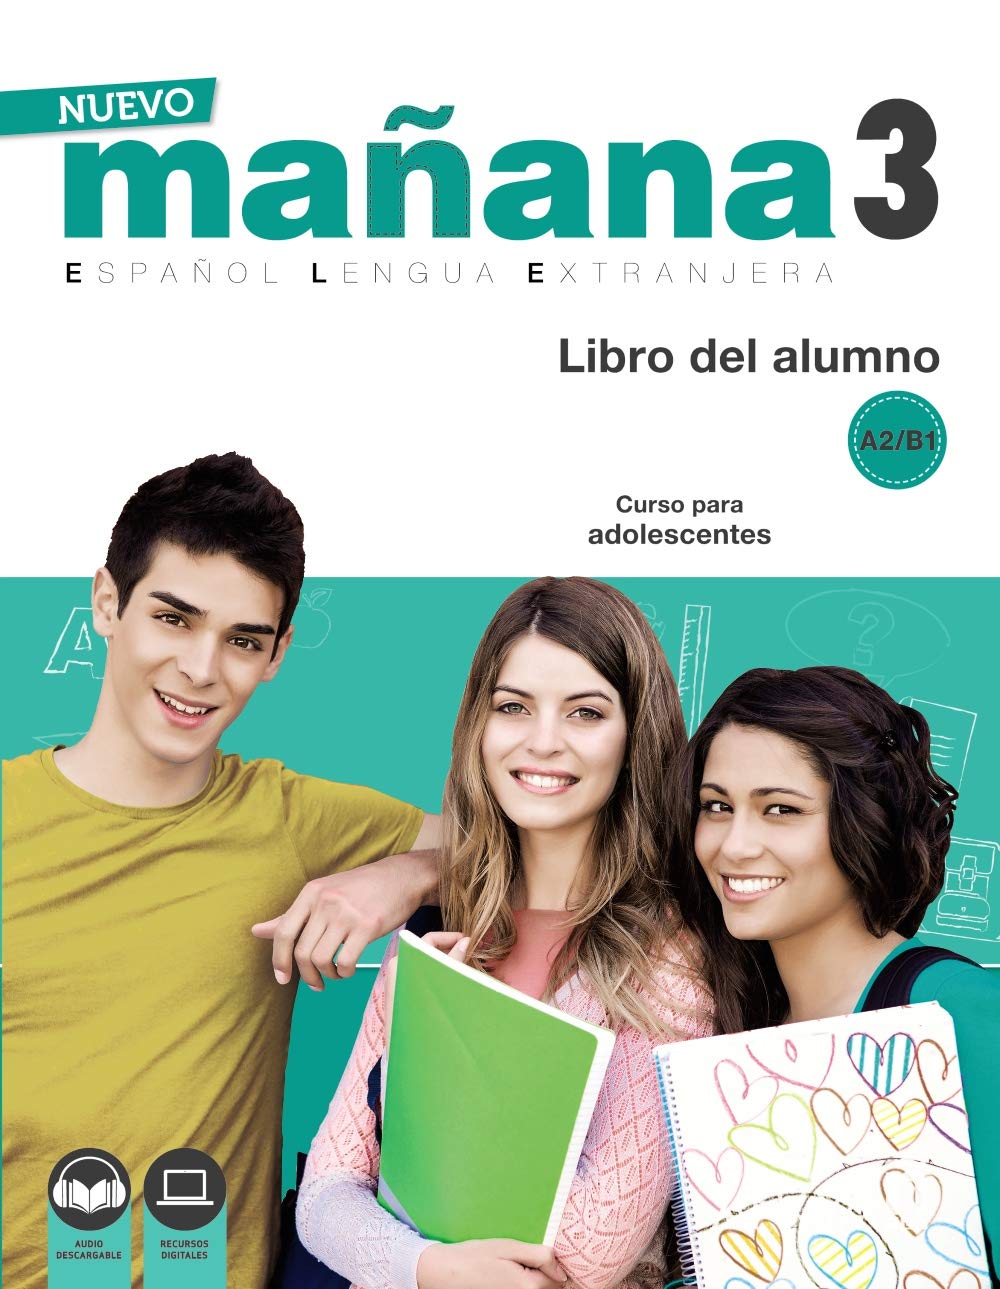 NUEVO MANANA 3 Libro del alumno + audio download